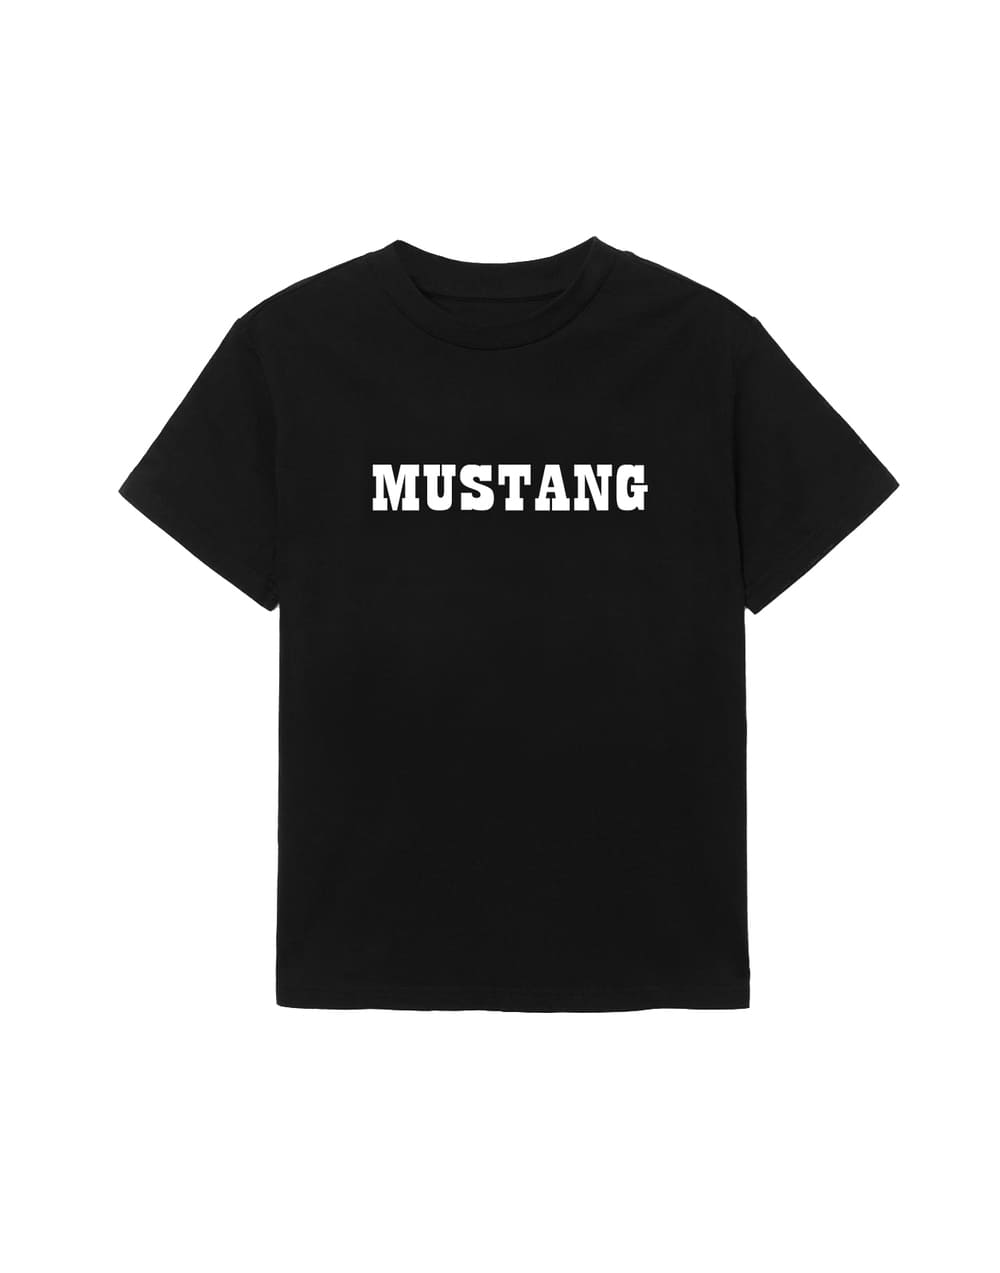 Одежда - Футболка Mustang MPFT05 размер M Фото 1